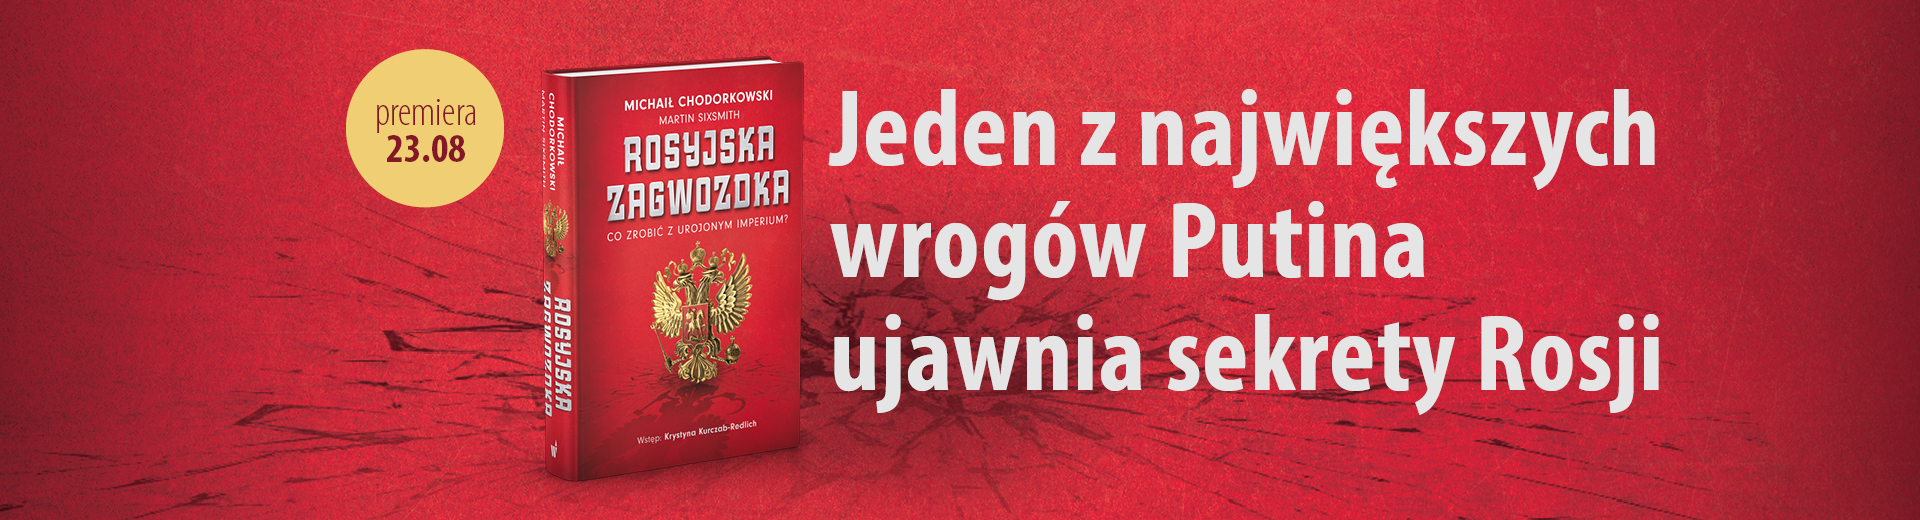 banner promujący książkę Rosyjska zagwozdka